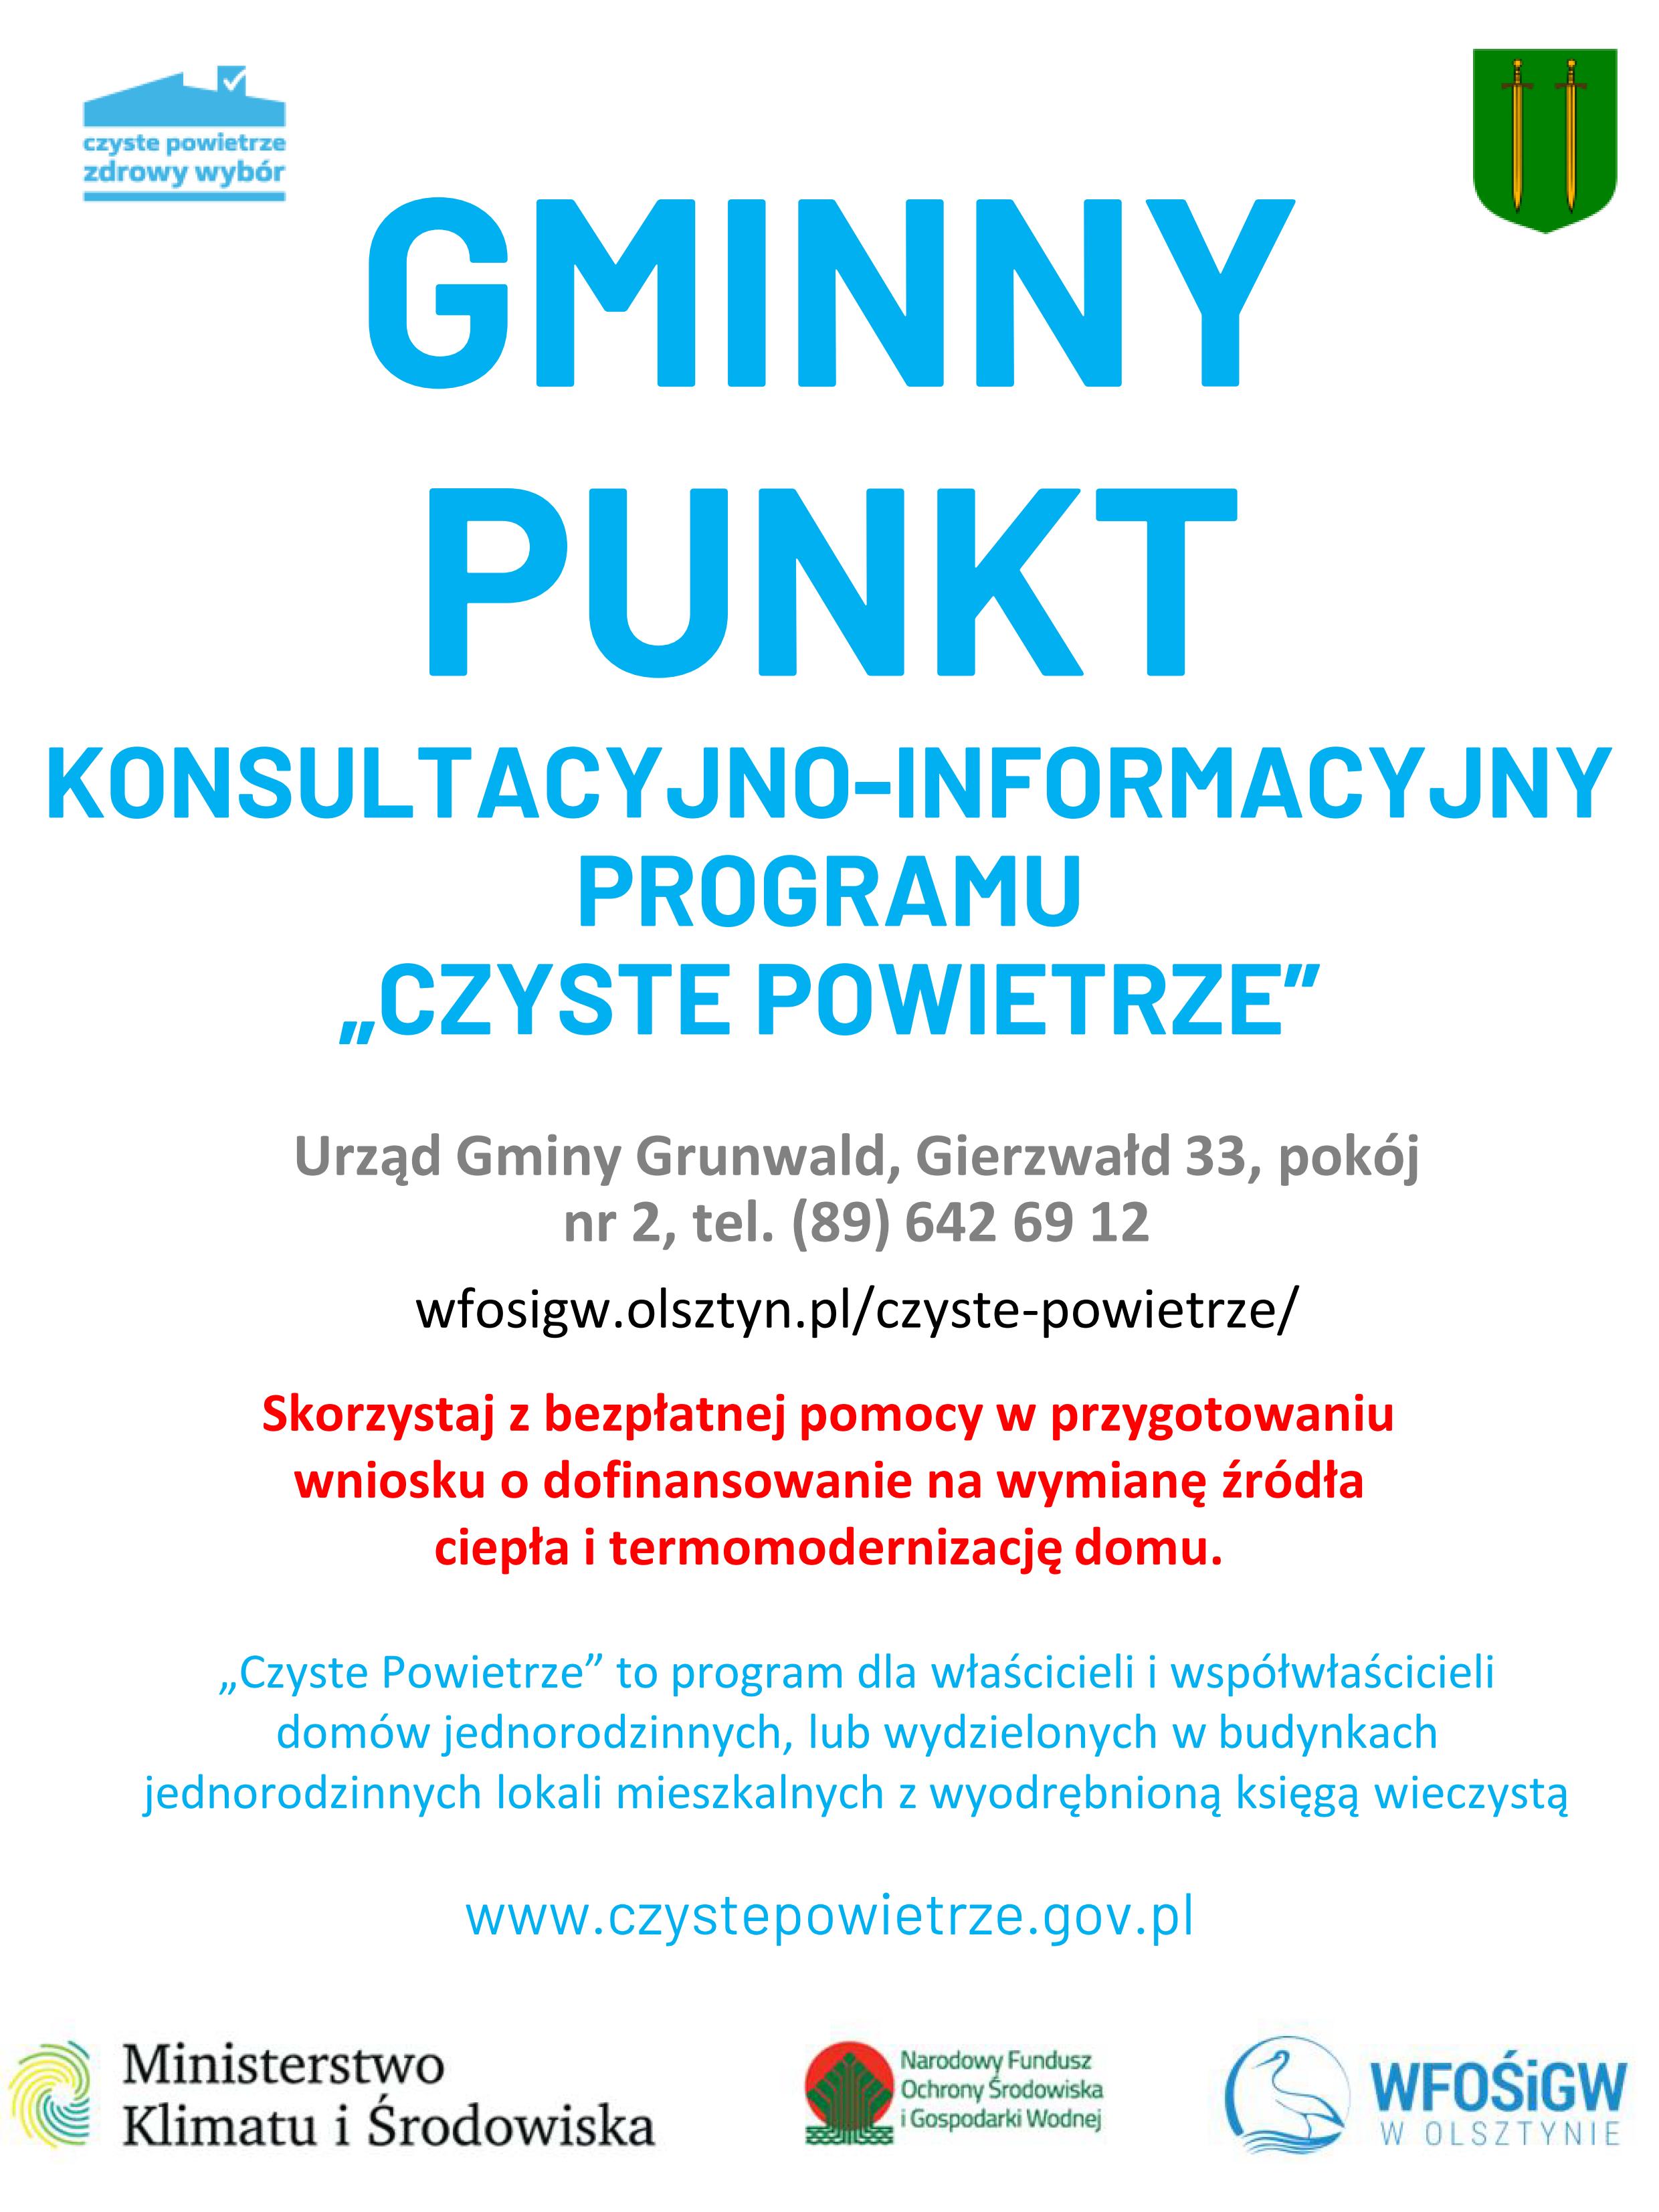 ---- GMINNY PUNKT INFORMACYJNY.jpg